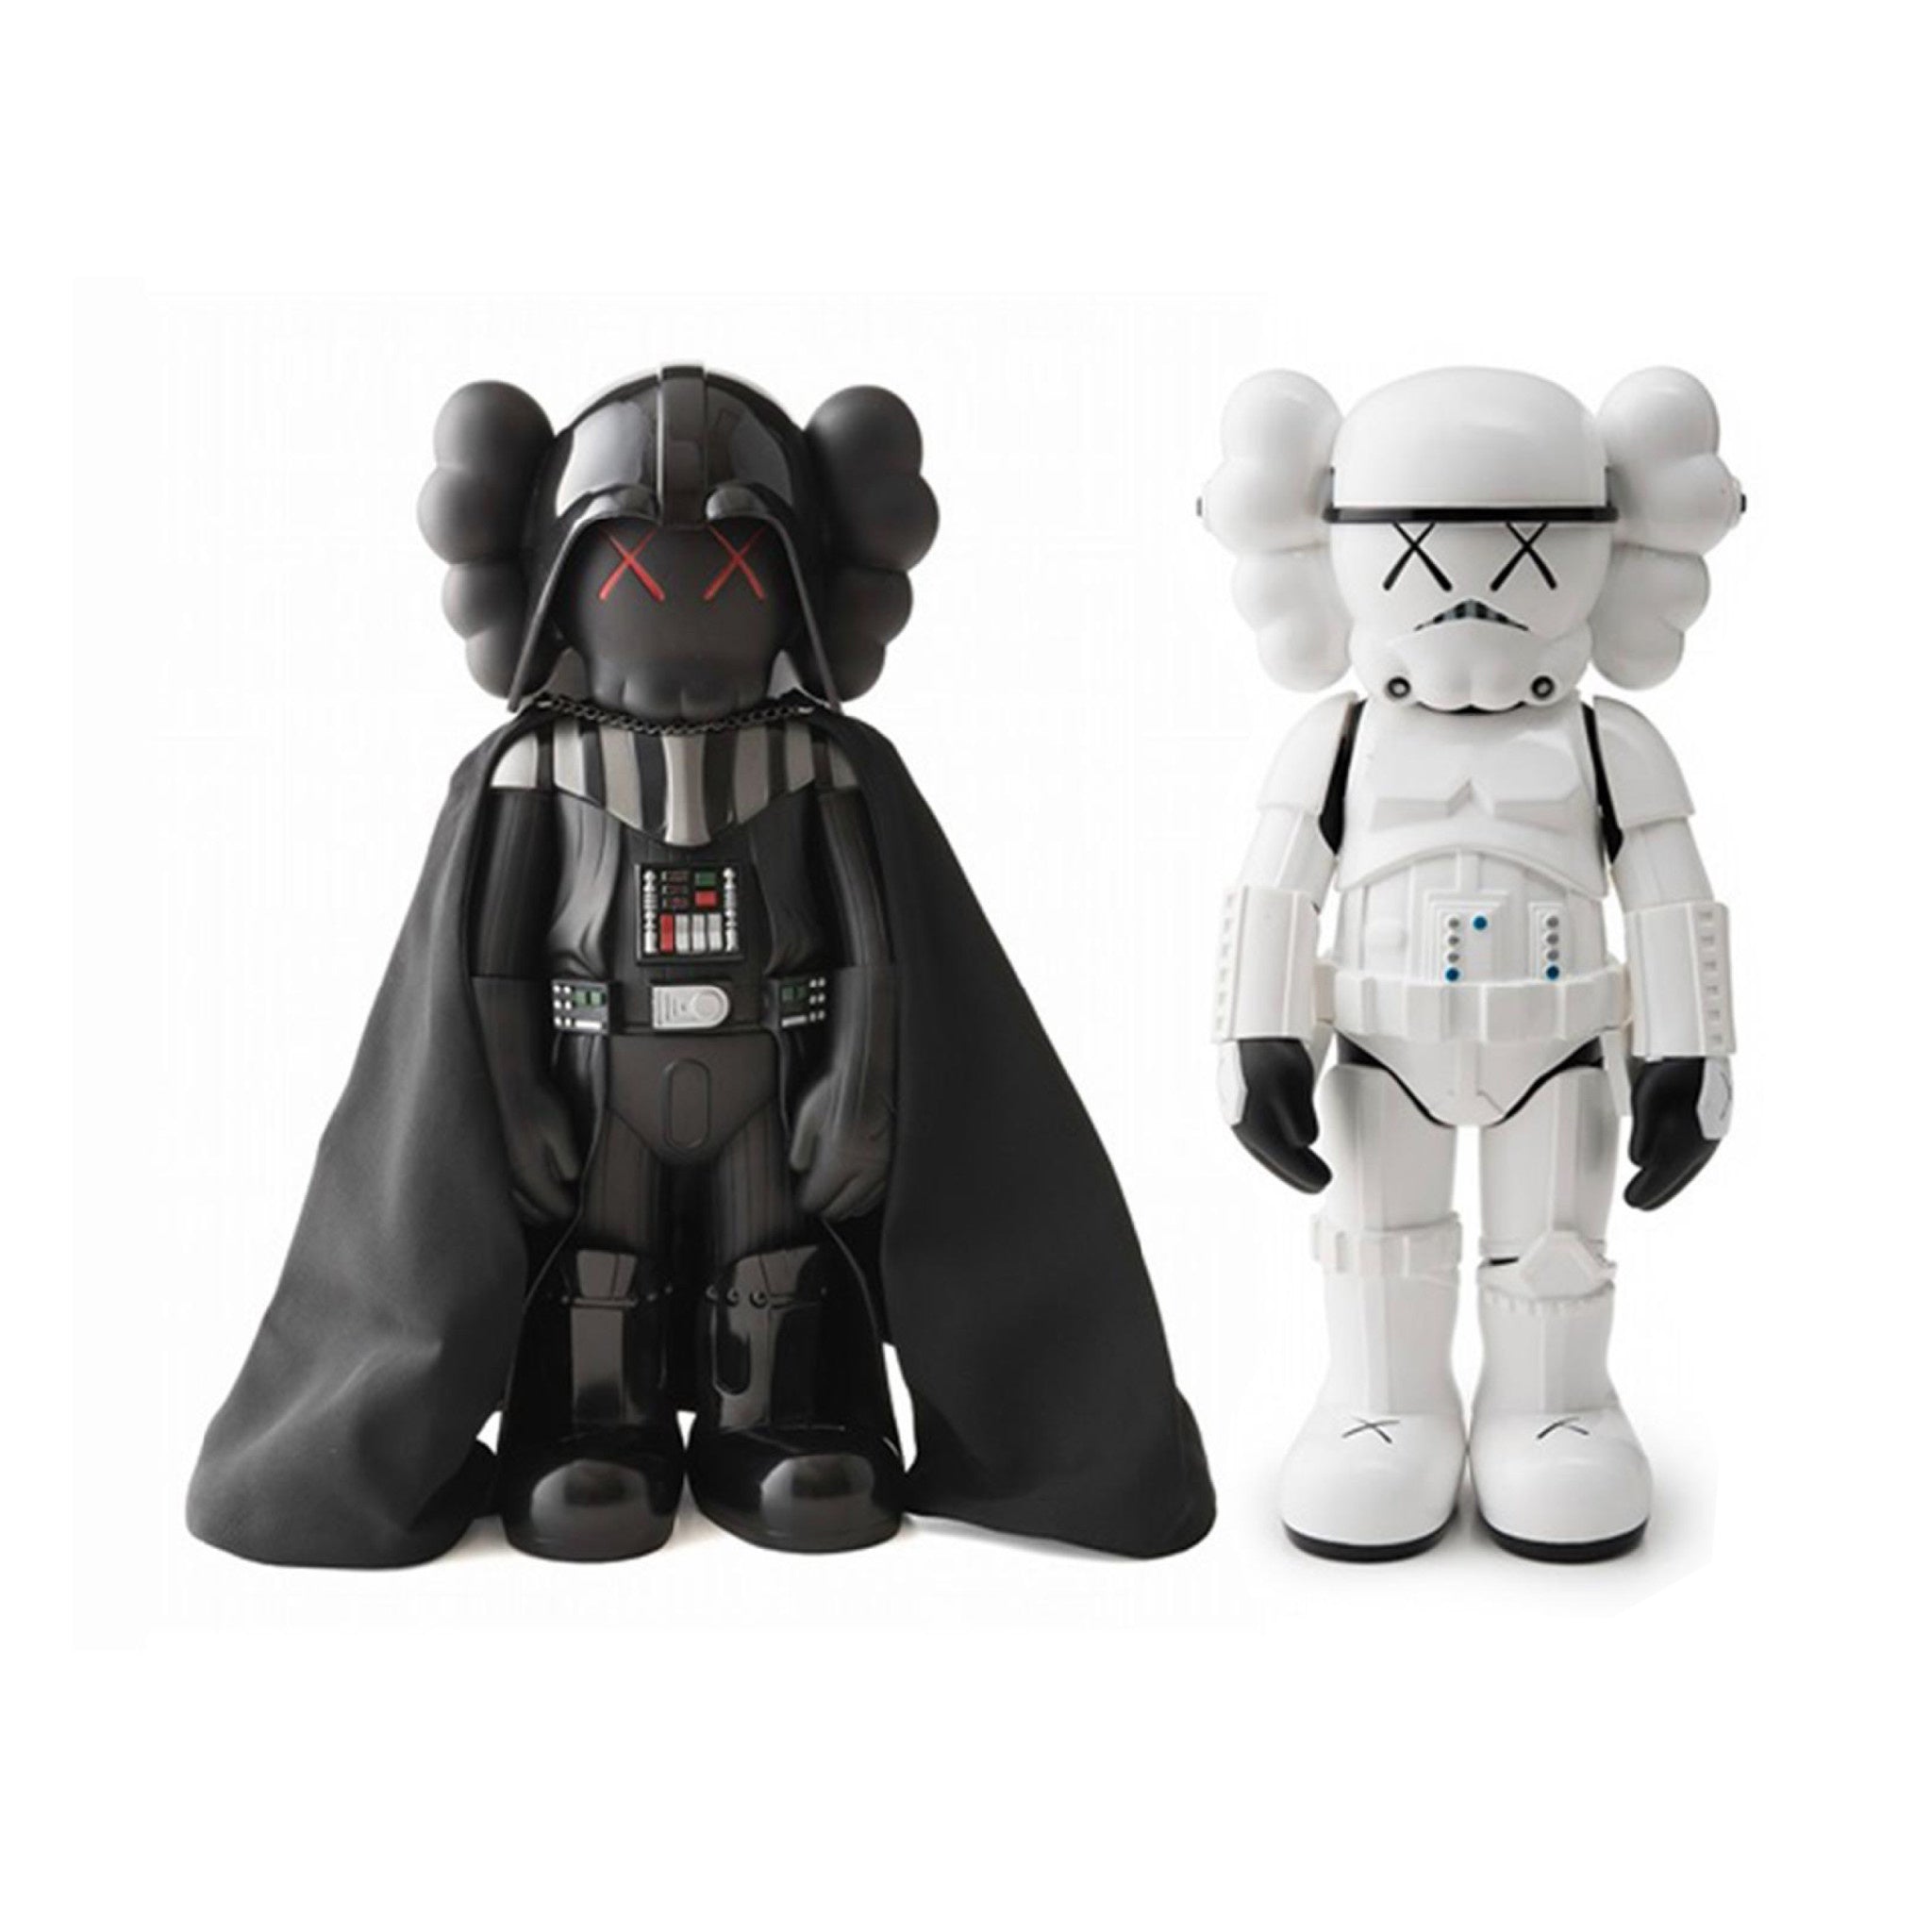 KAWS x Starwars - Darth Vader & Storm Trooper Mini Figure Set - Wynwood Walls Shop